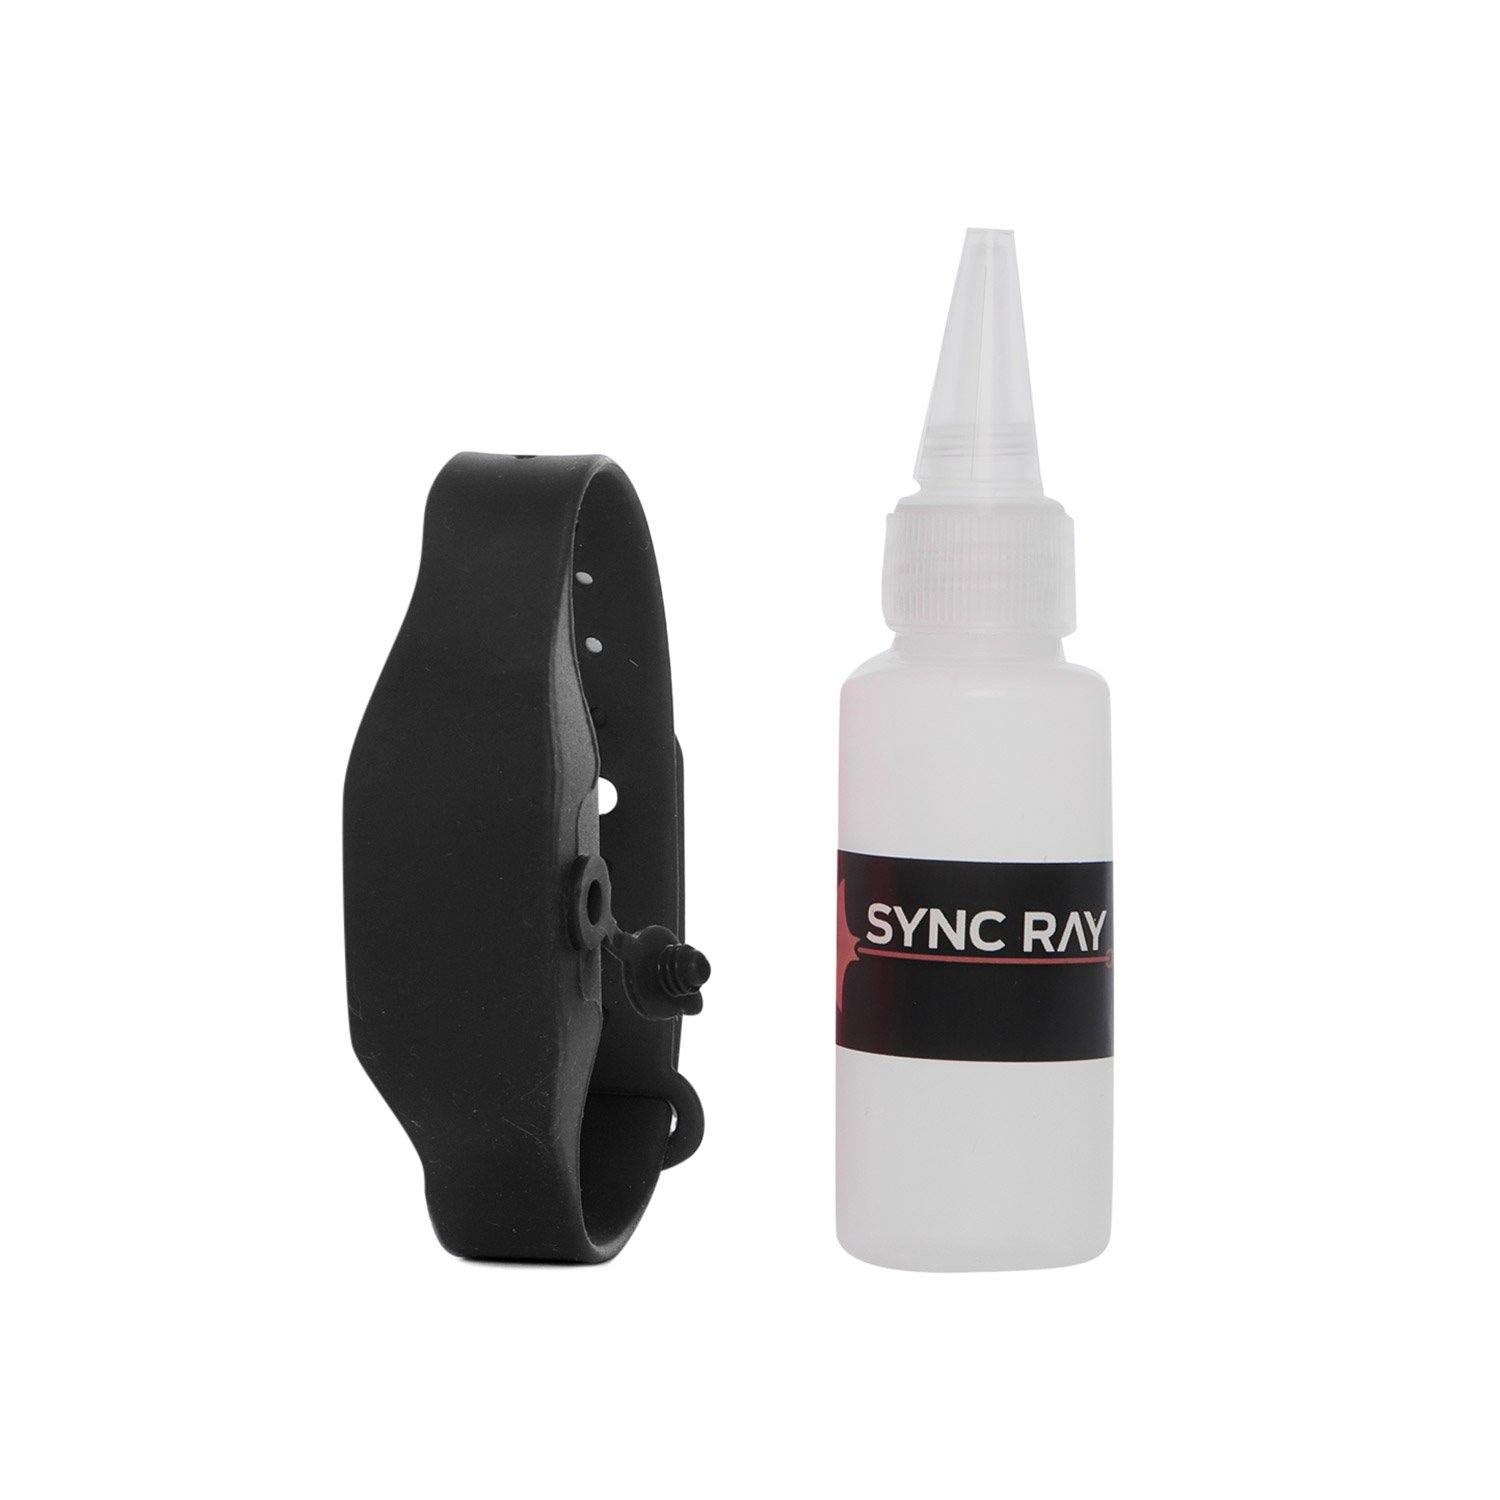 SYNC RAY BANDA SANITIZANTE DE SILICON GB10 NEGRO - Sync Ray